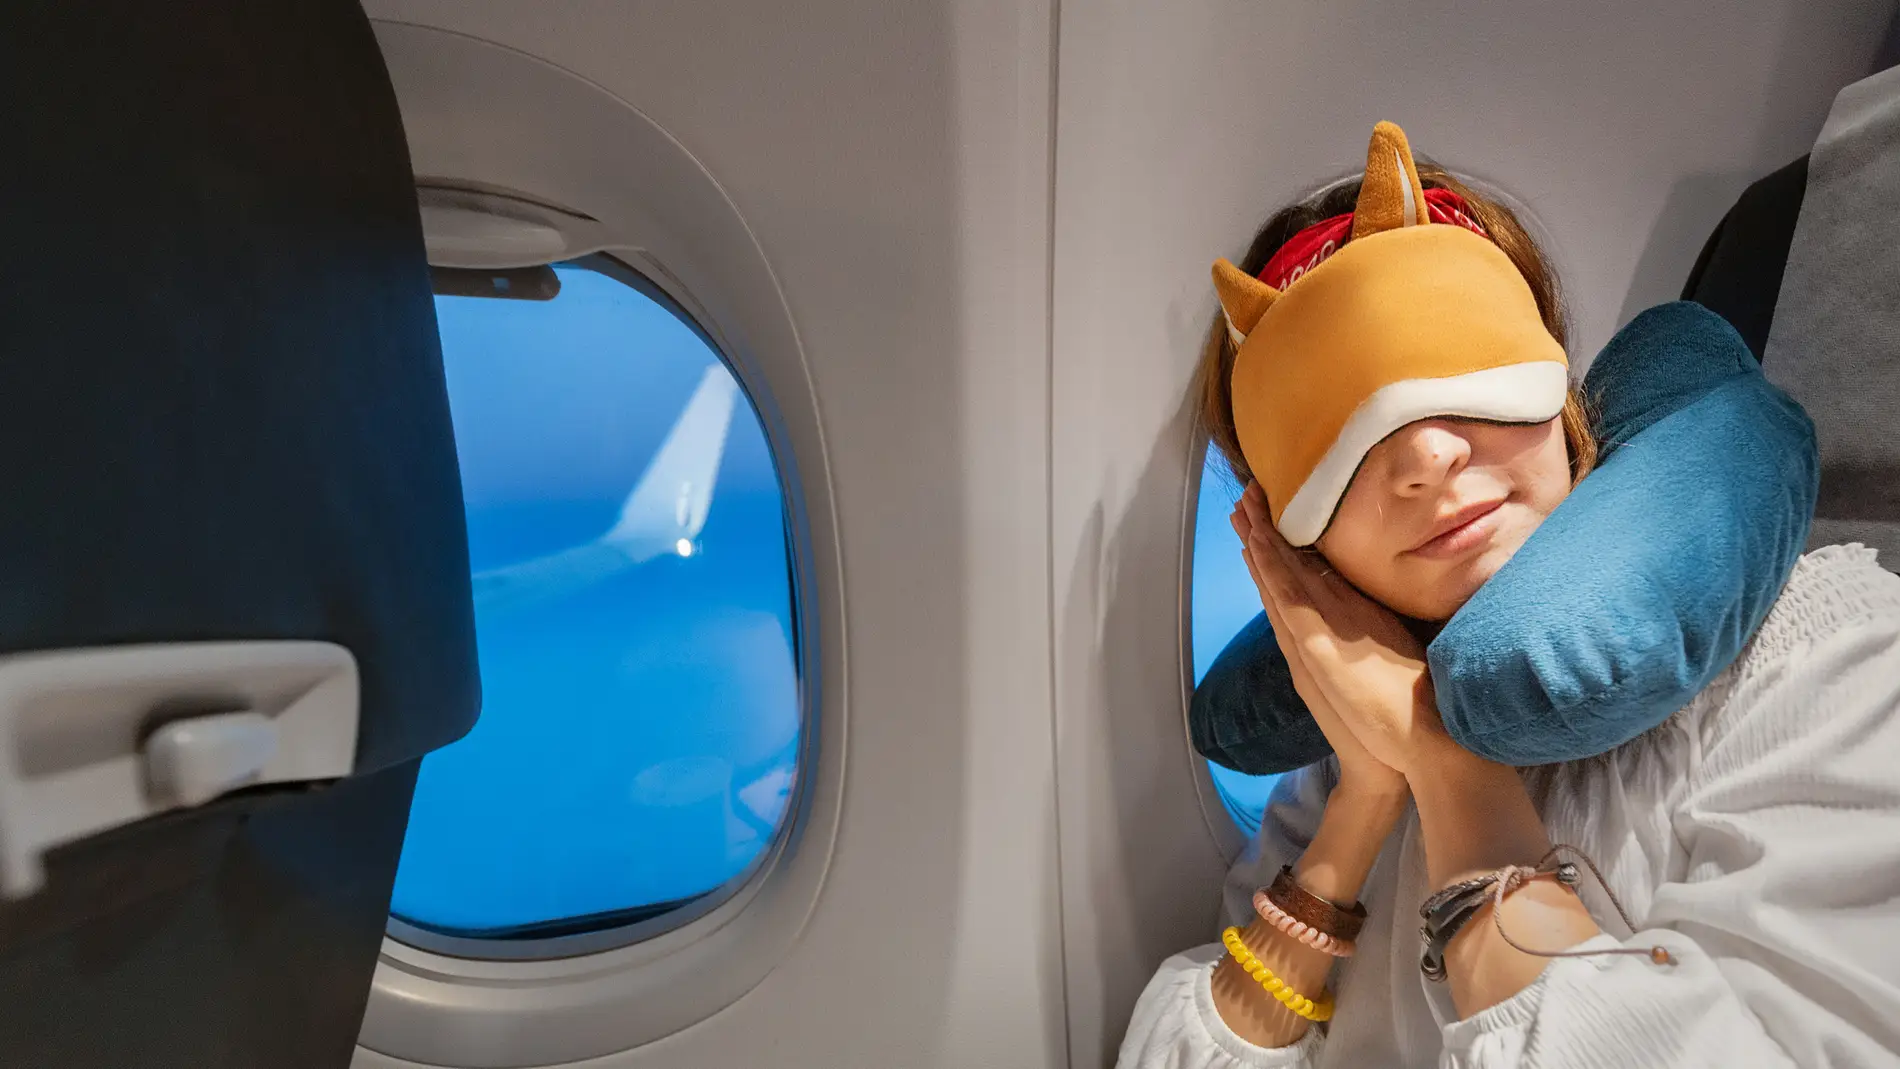 El truco del cojín para llevarse más ropa gratis en el avión que se ha  hecho viral en TikTok